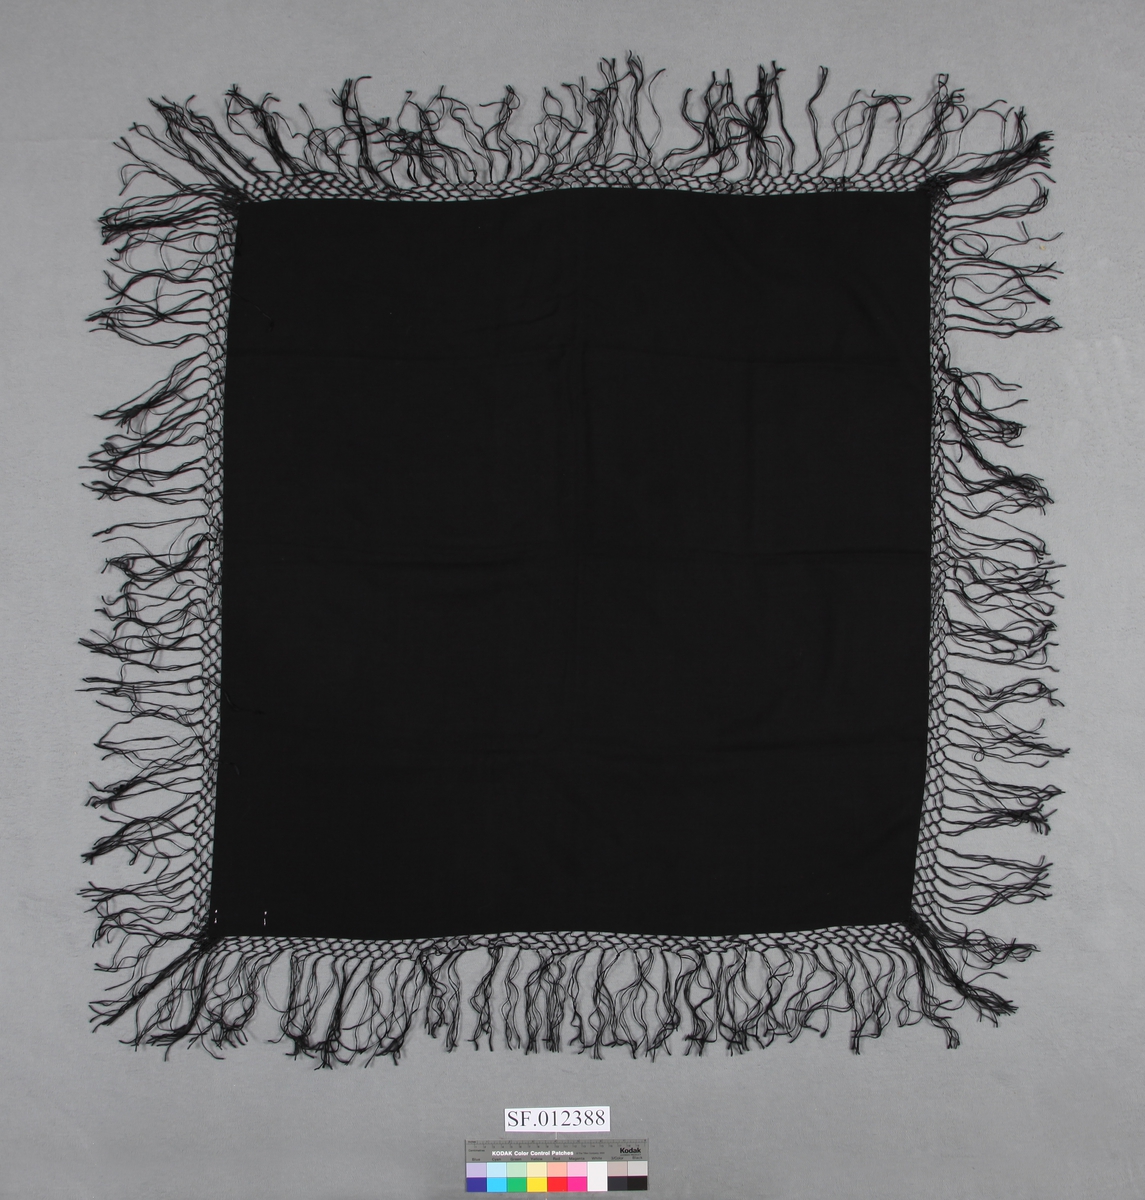 Nesten kvadratisk  forma sjal av svart, vevd ullstoff med frynser på all sidene. Frynsene er ca 3 cm inn mot sjalet, tredde saman og knytta i ruter. Resten, ca 10 cm, heng fritt. . Tre sider er oversydd. Ei side er kanta av stoffet. (Selvage edge)